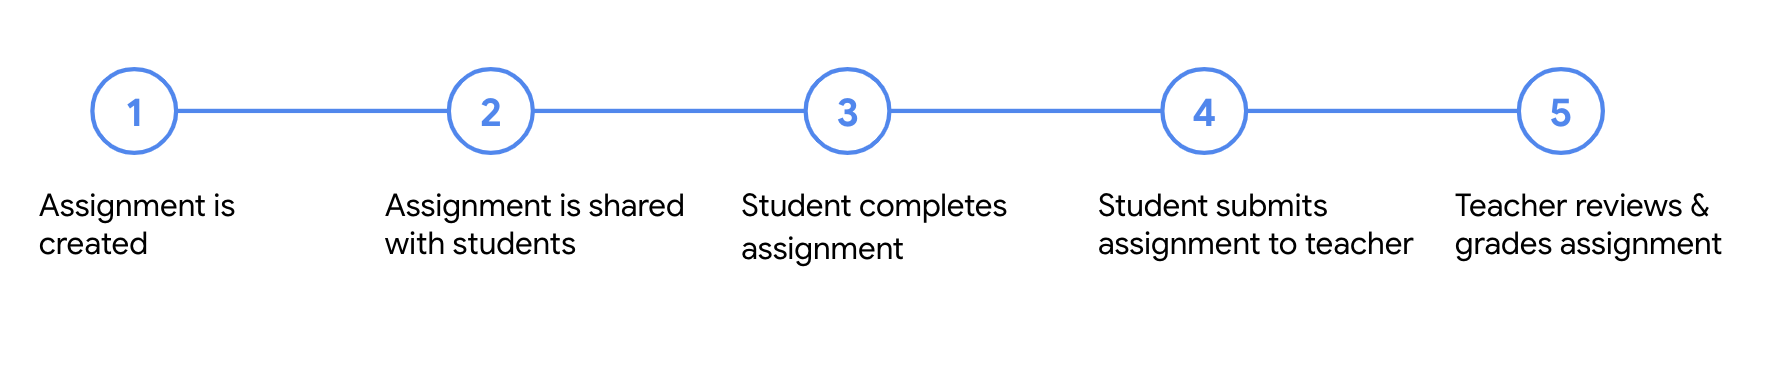 رسم تخطيطي يوضح الخطوات الخمس لمهمة دراسية